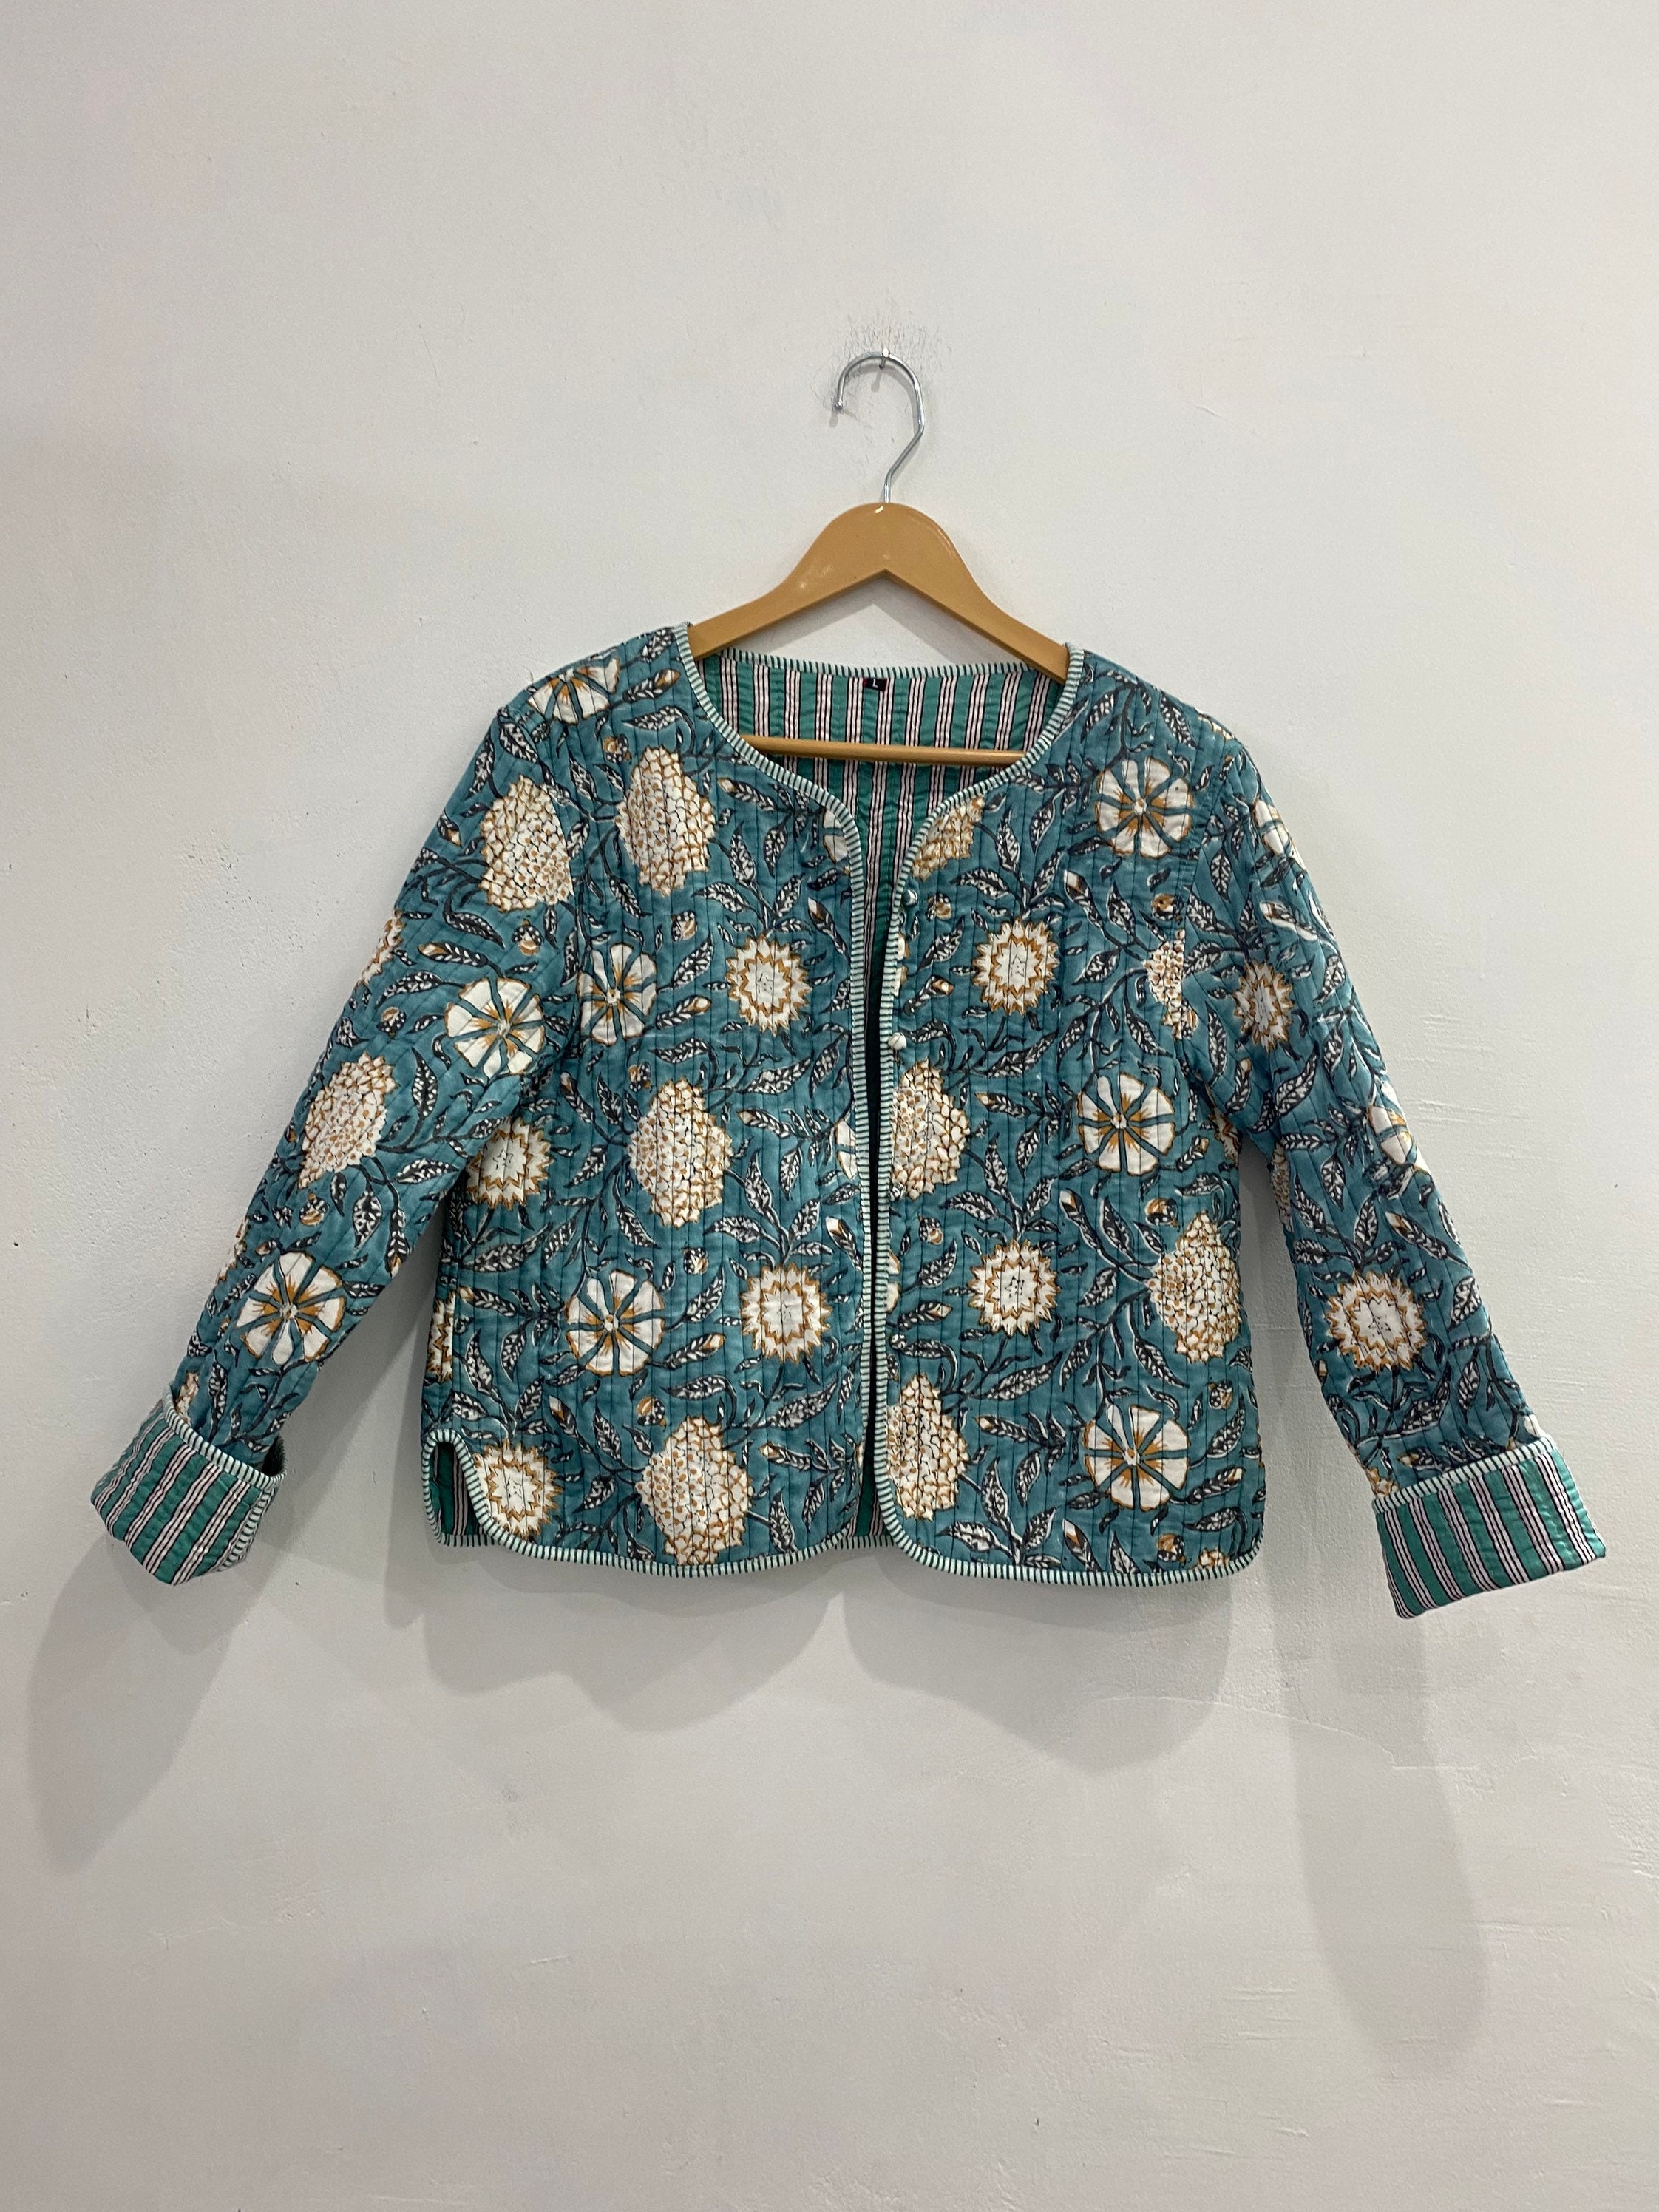 Indian Handblock Print Fabric Quilted Jacket Short Kimono - Etsy UK